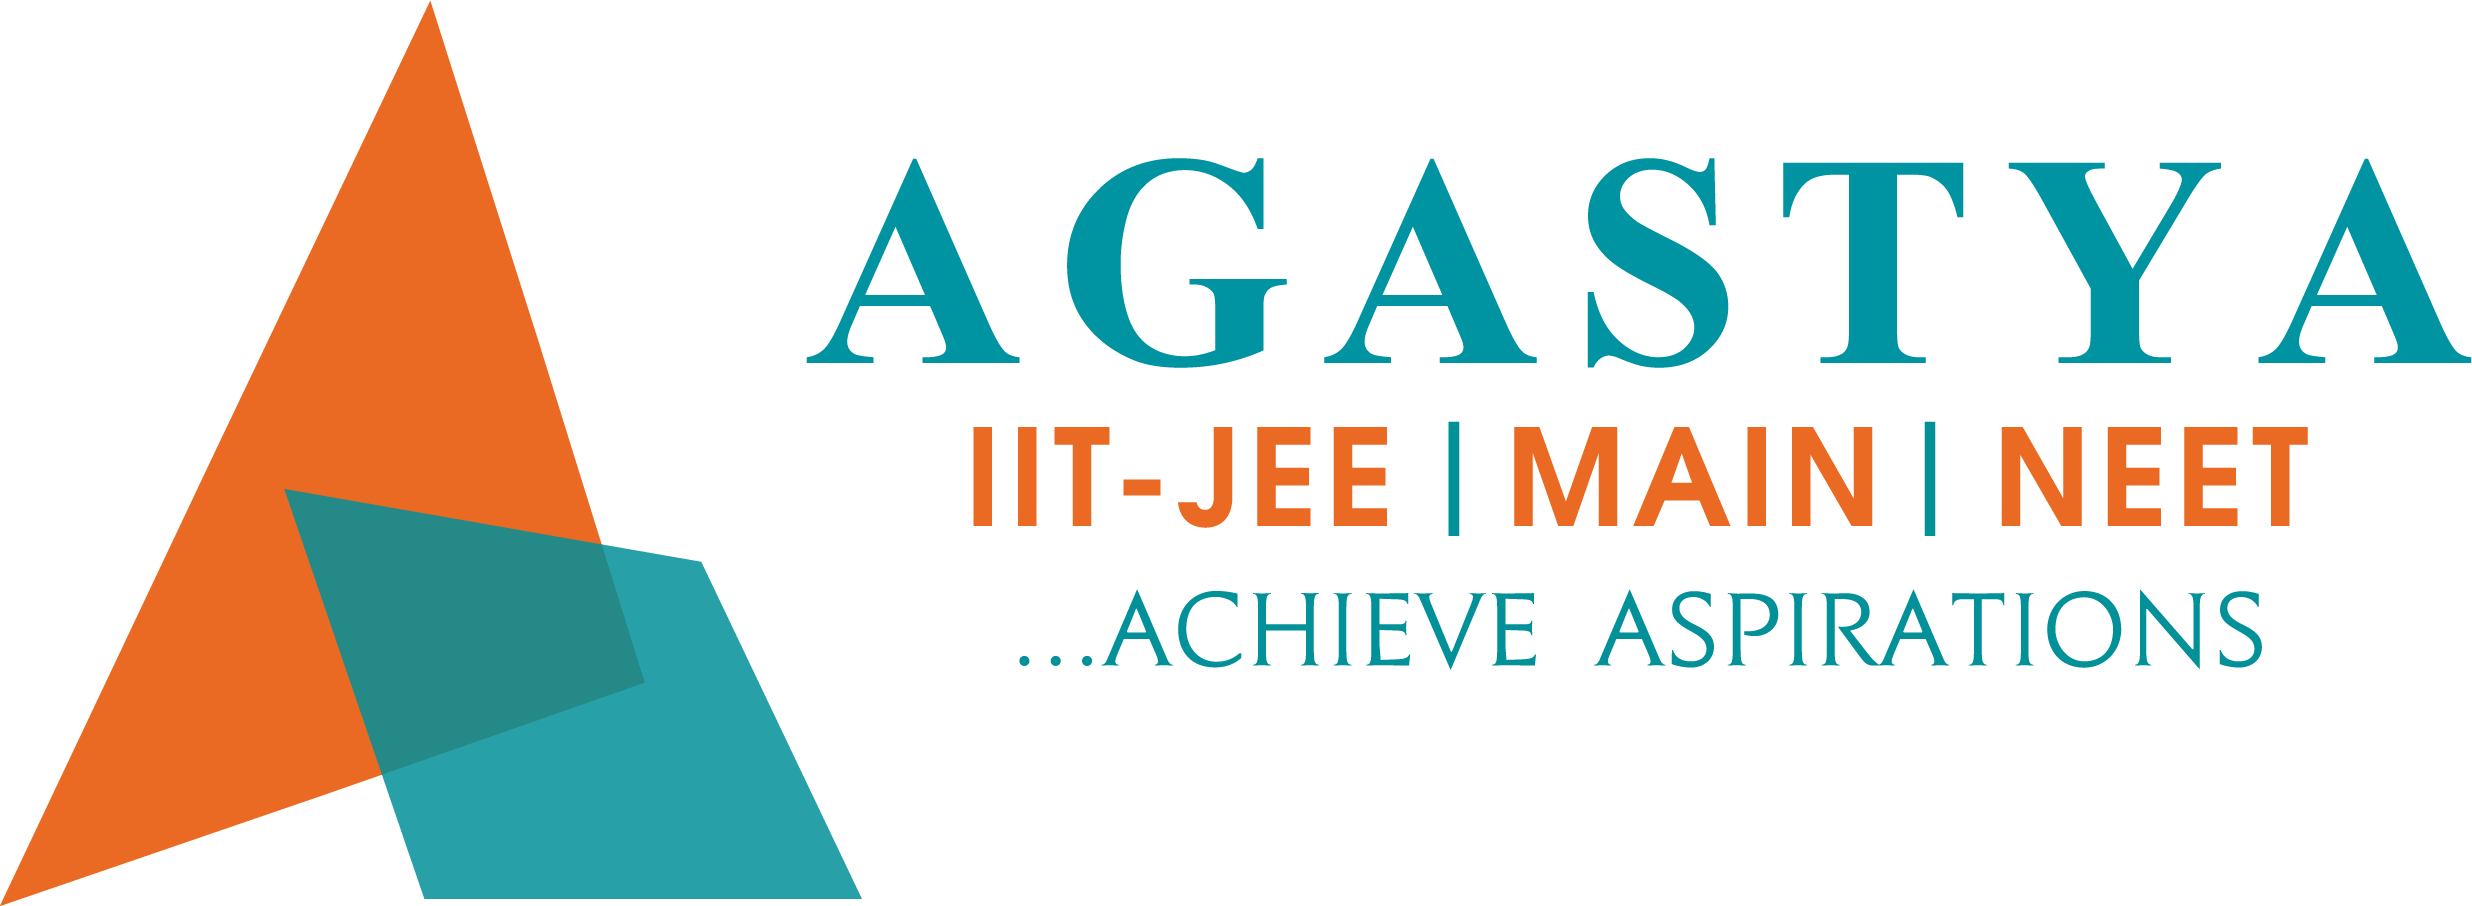 Agastya Website Logo